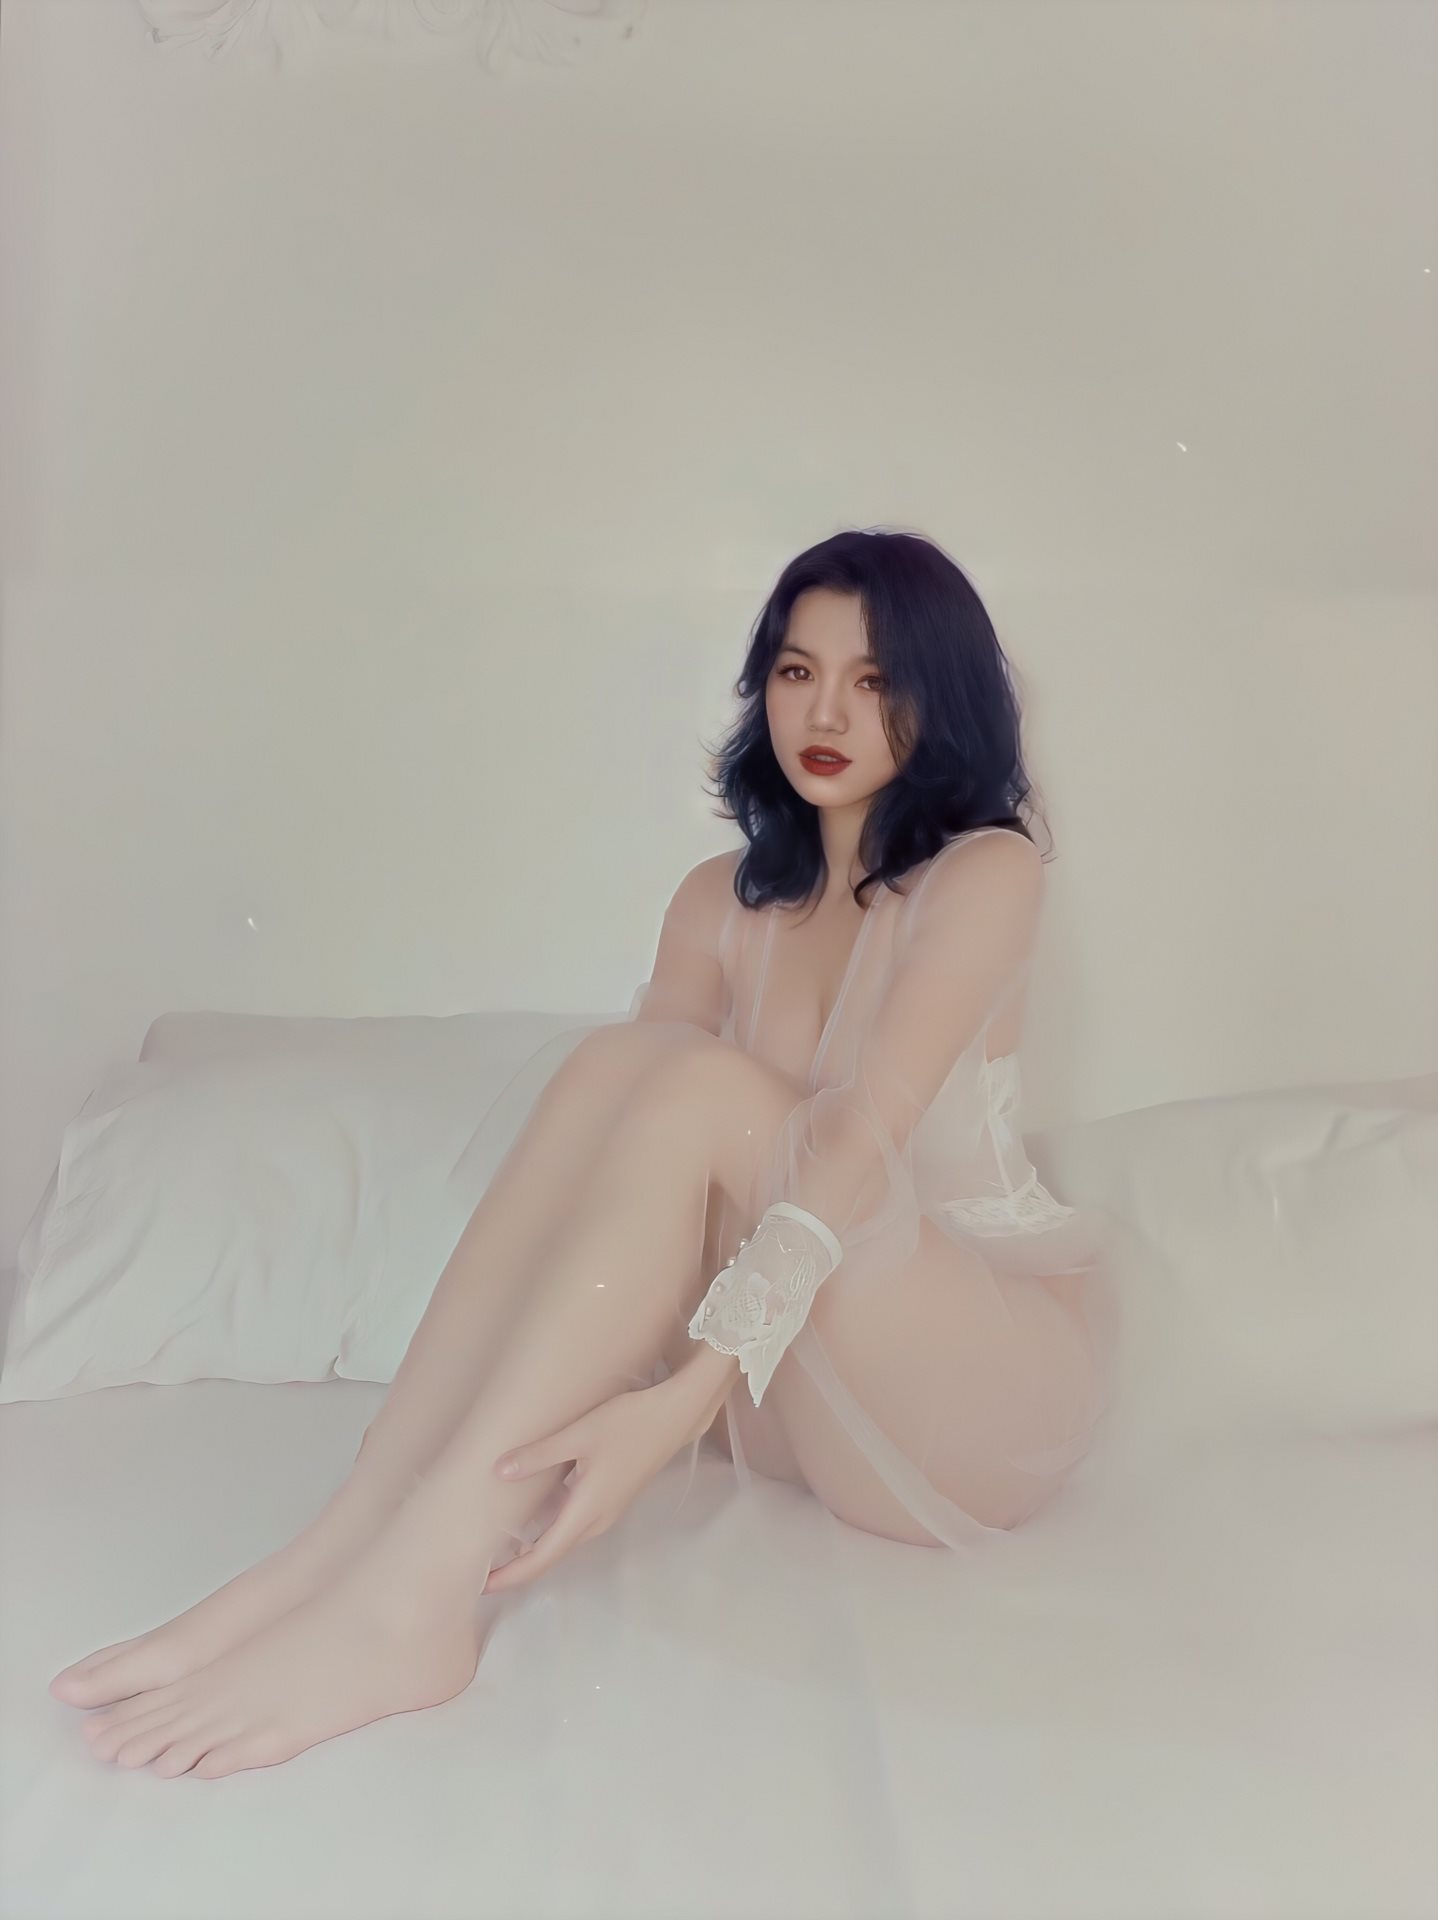 Huyền Nguyễn huyen.chaiko Huyenbear___ Instagram, Huyền Bear, Sexy Girls